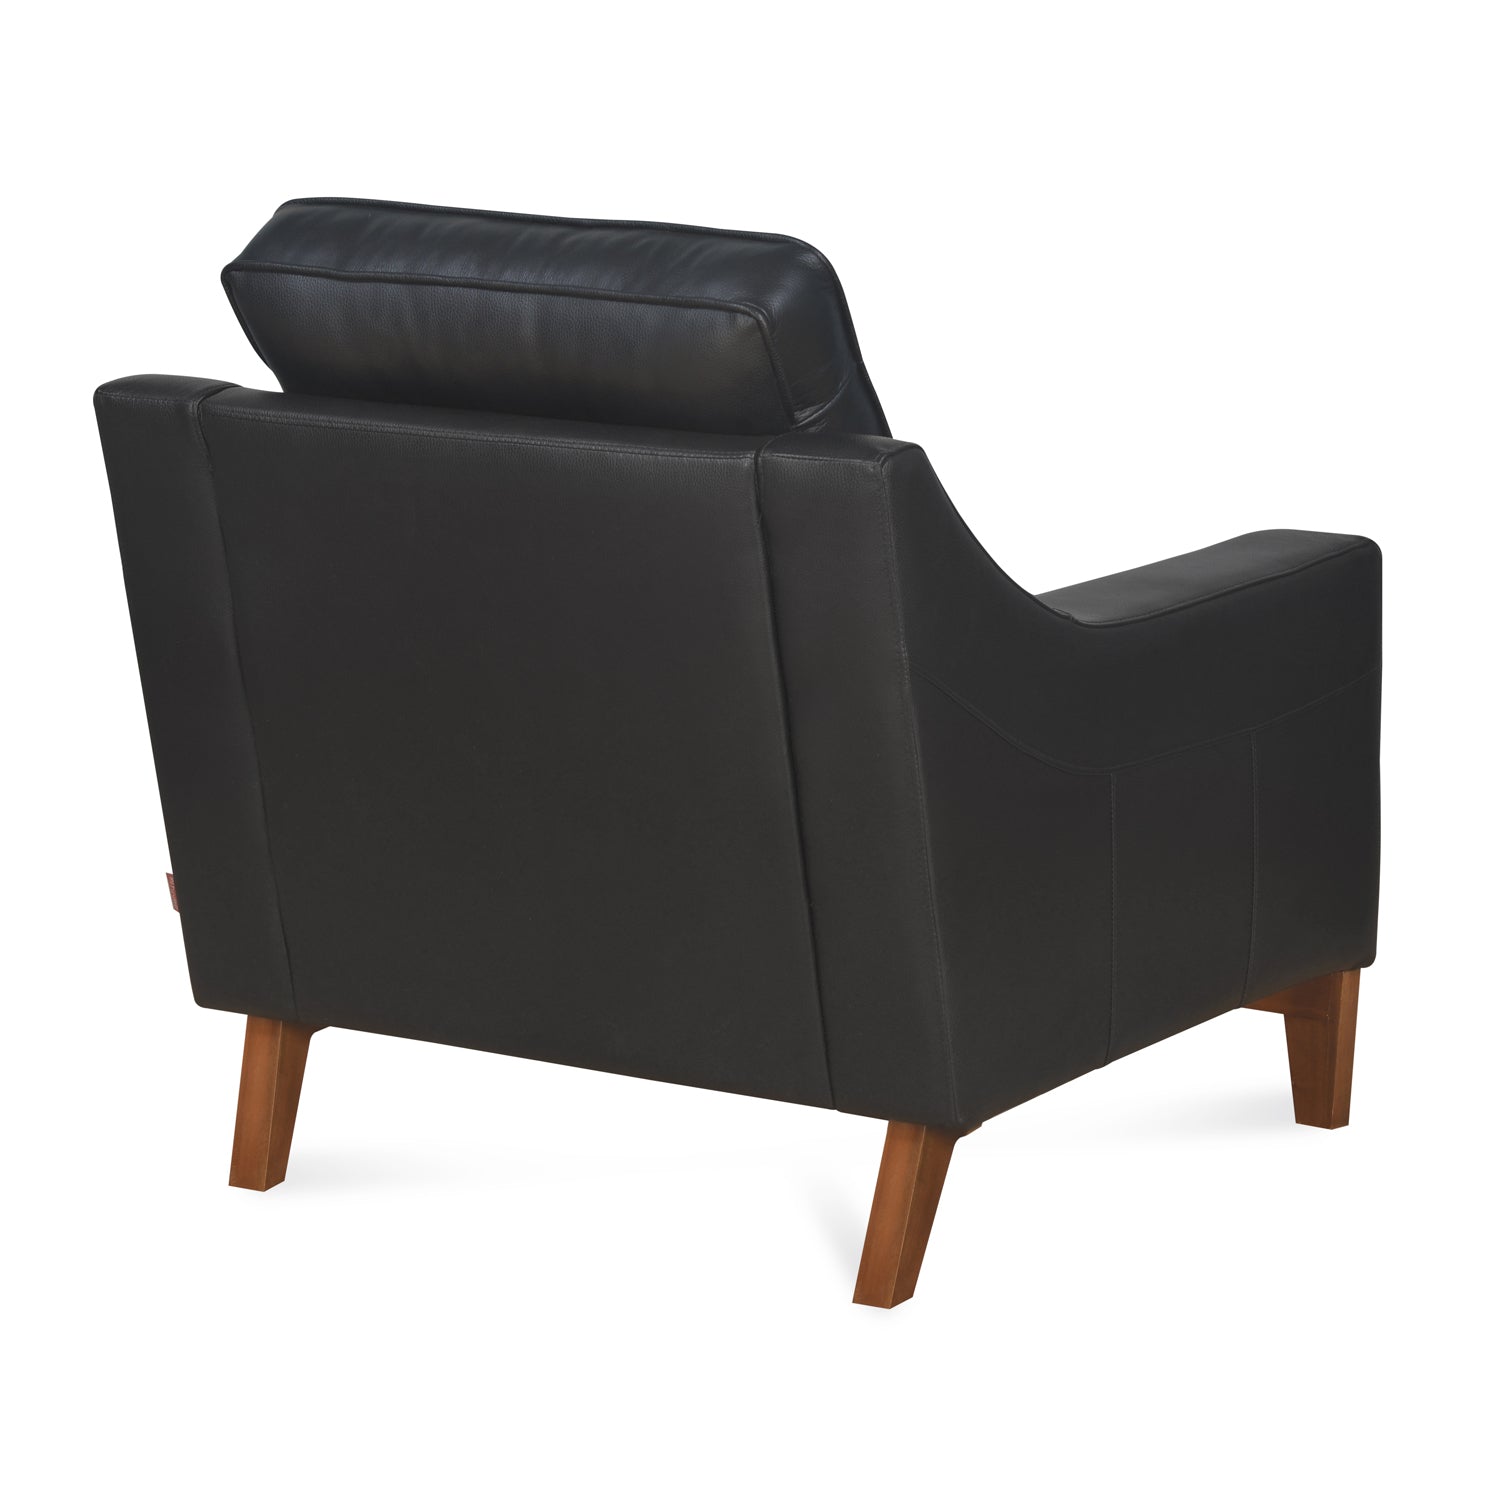 Marissa 1 Seater Sofa (Black)